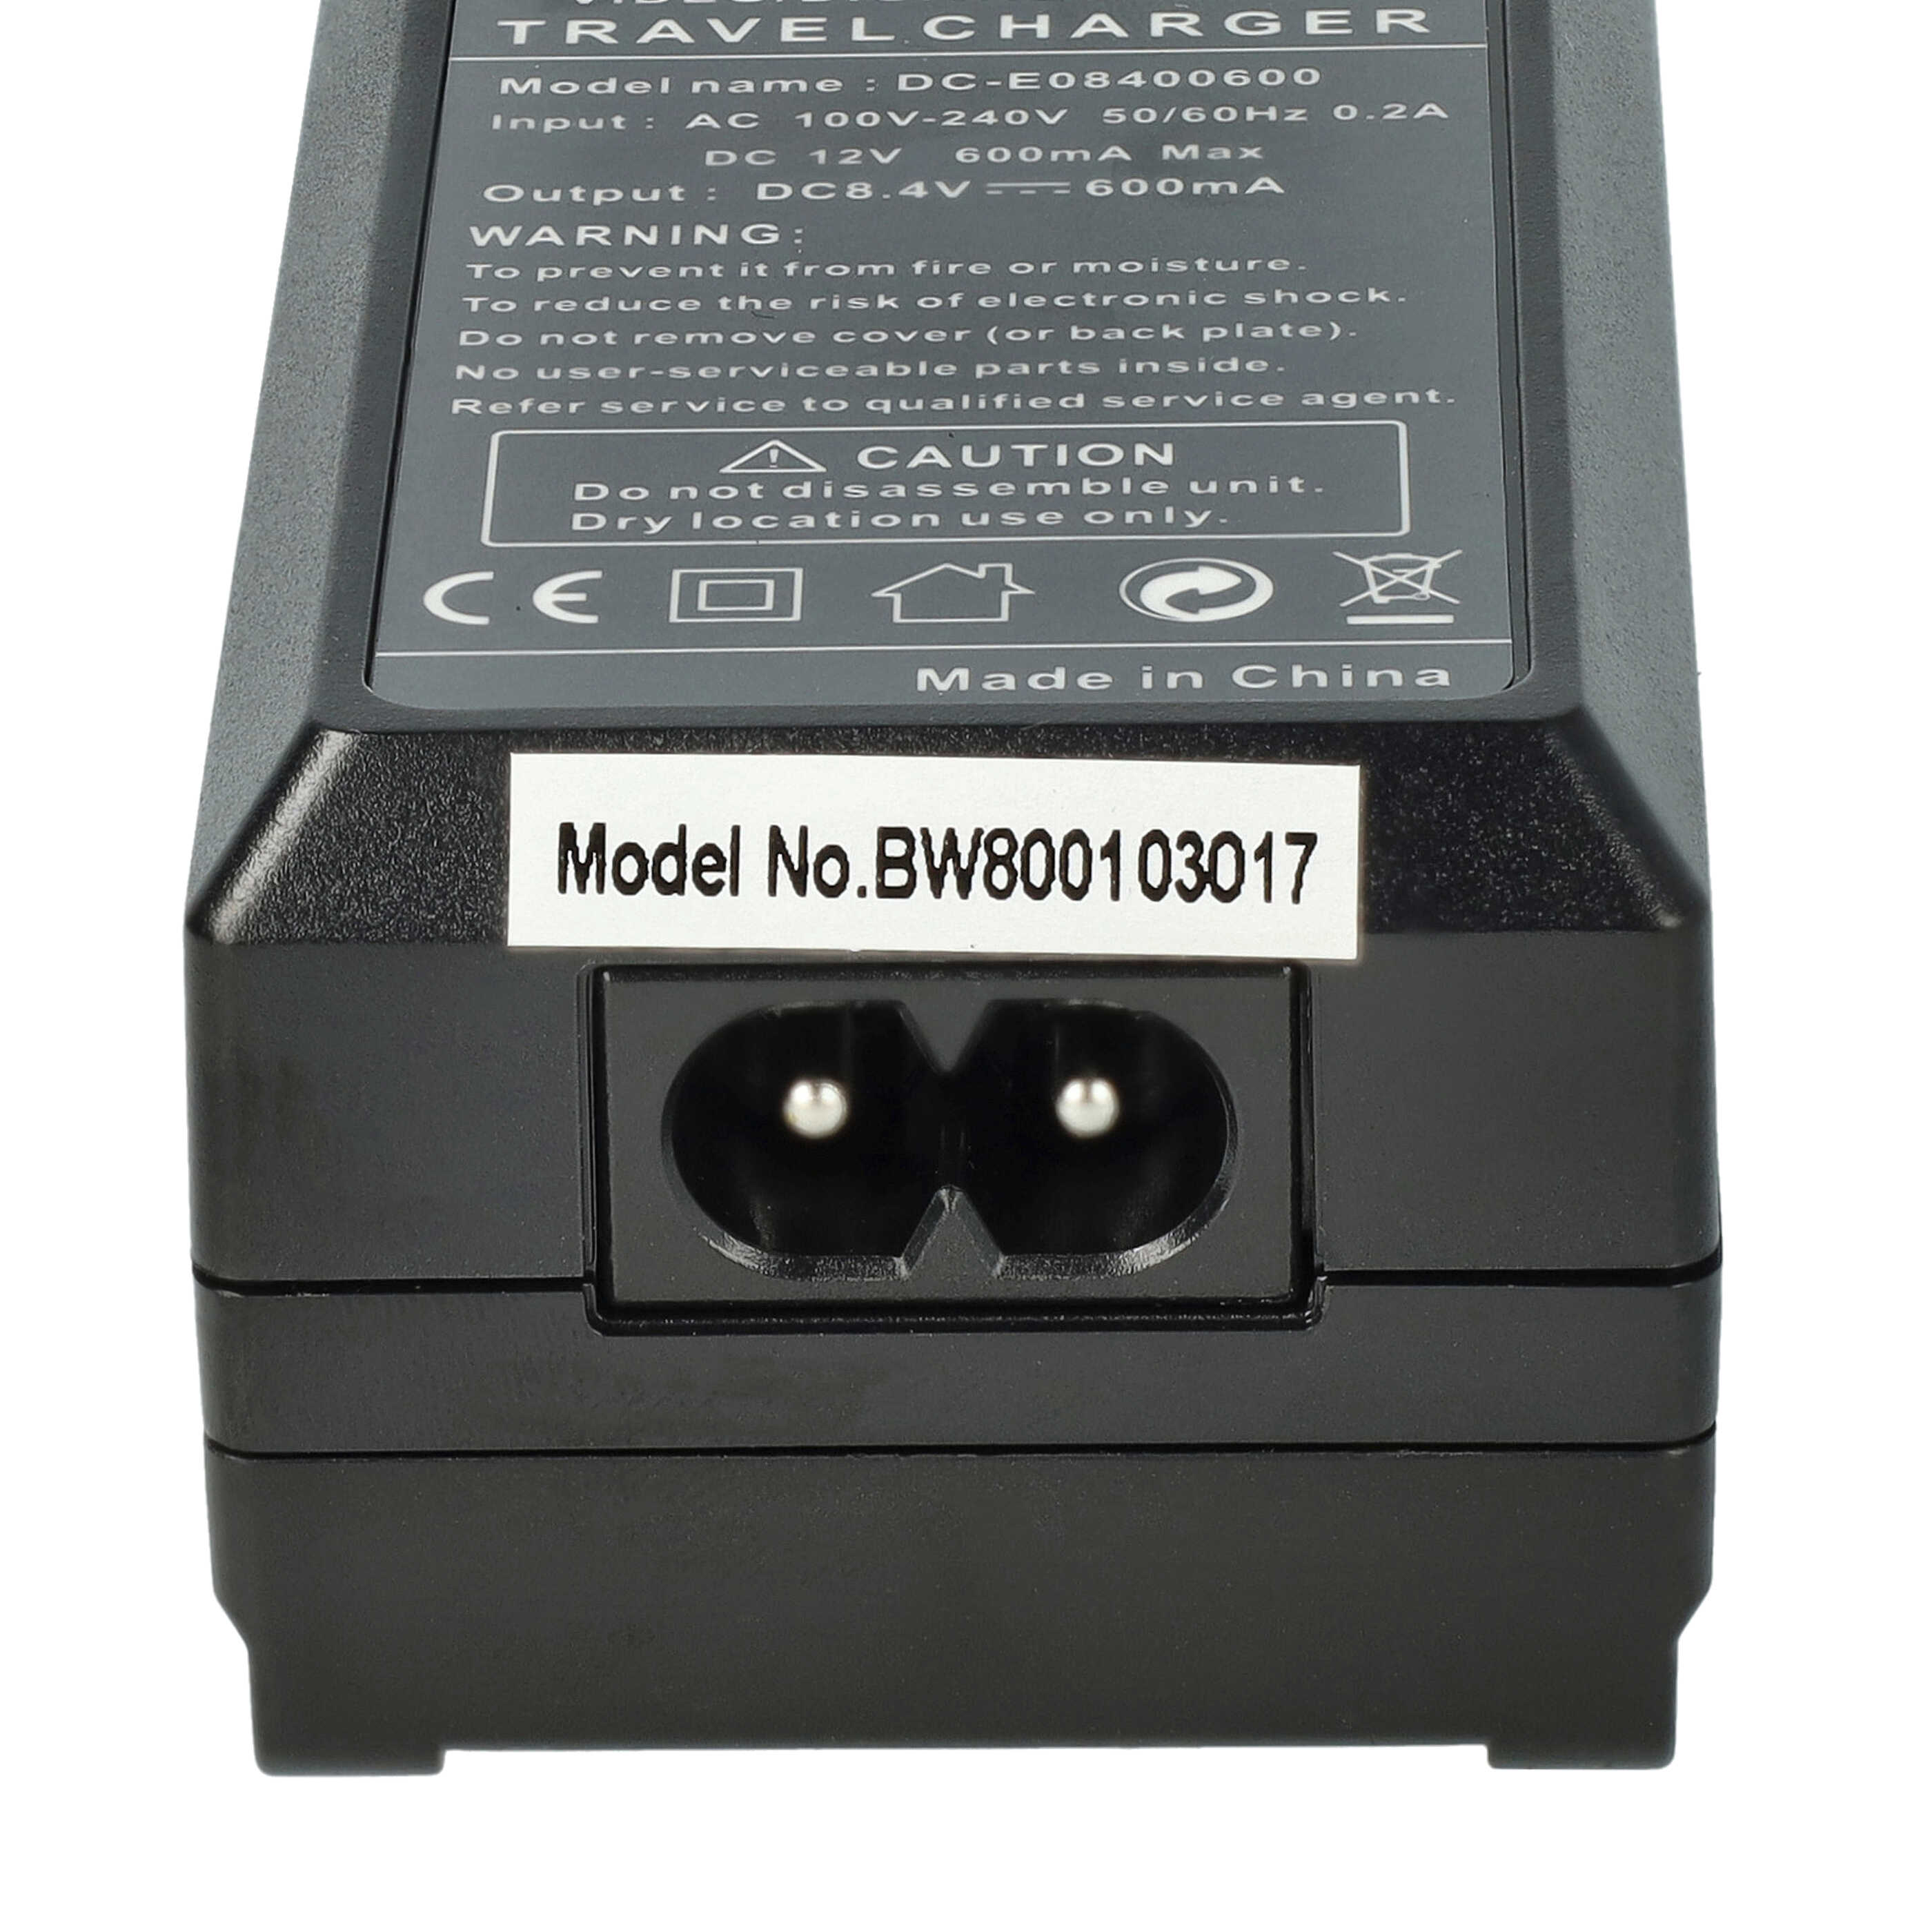 Caricabatterie + adattatore da auto sostituisce Canon CB-2LCE per fotocamera Canon - 0,6A 8,4V 88,5cm